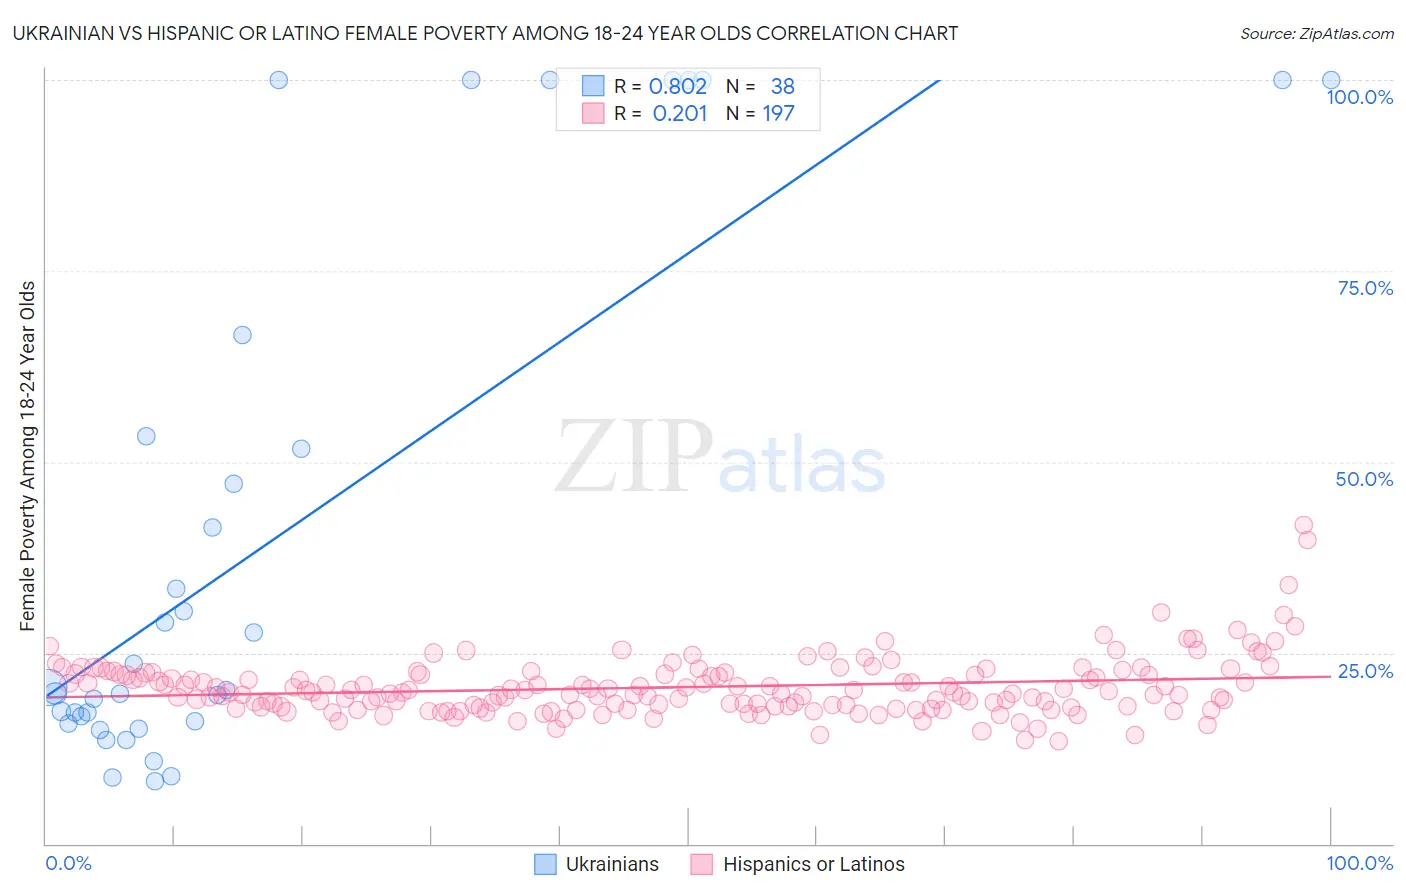 Ukrainian vs Hispanic or Latino Female Poverty Among 18-24 Year Olds